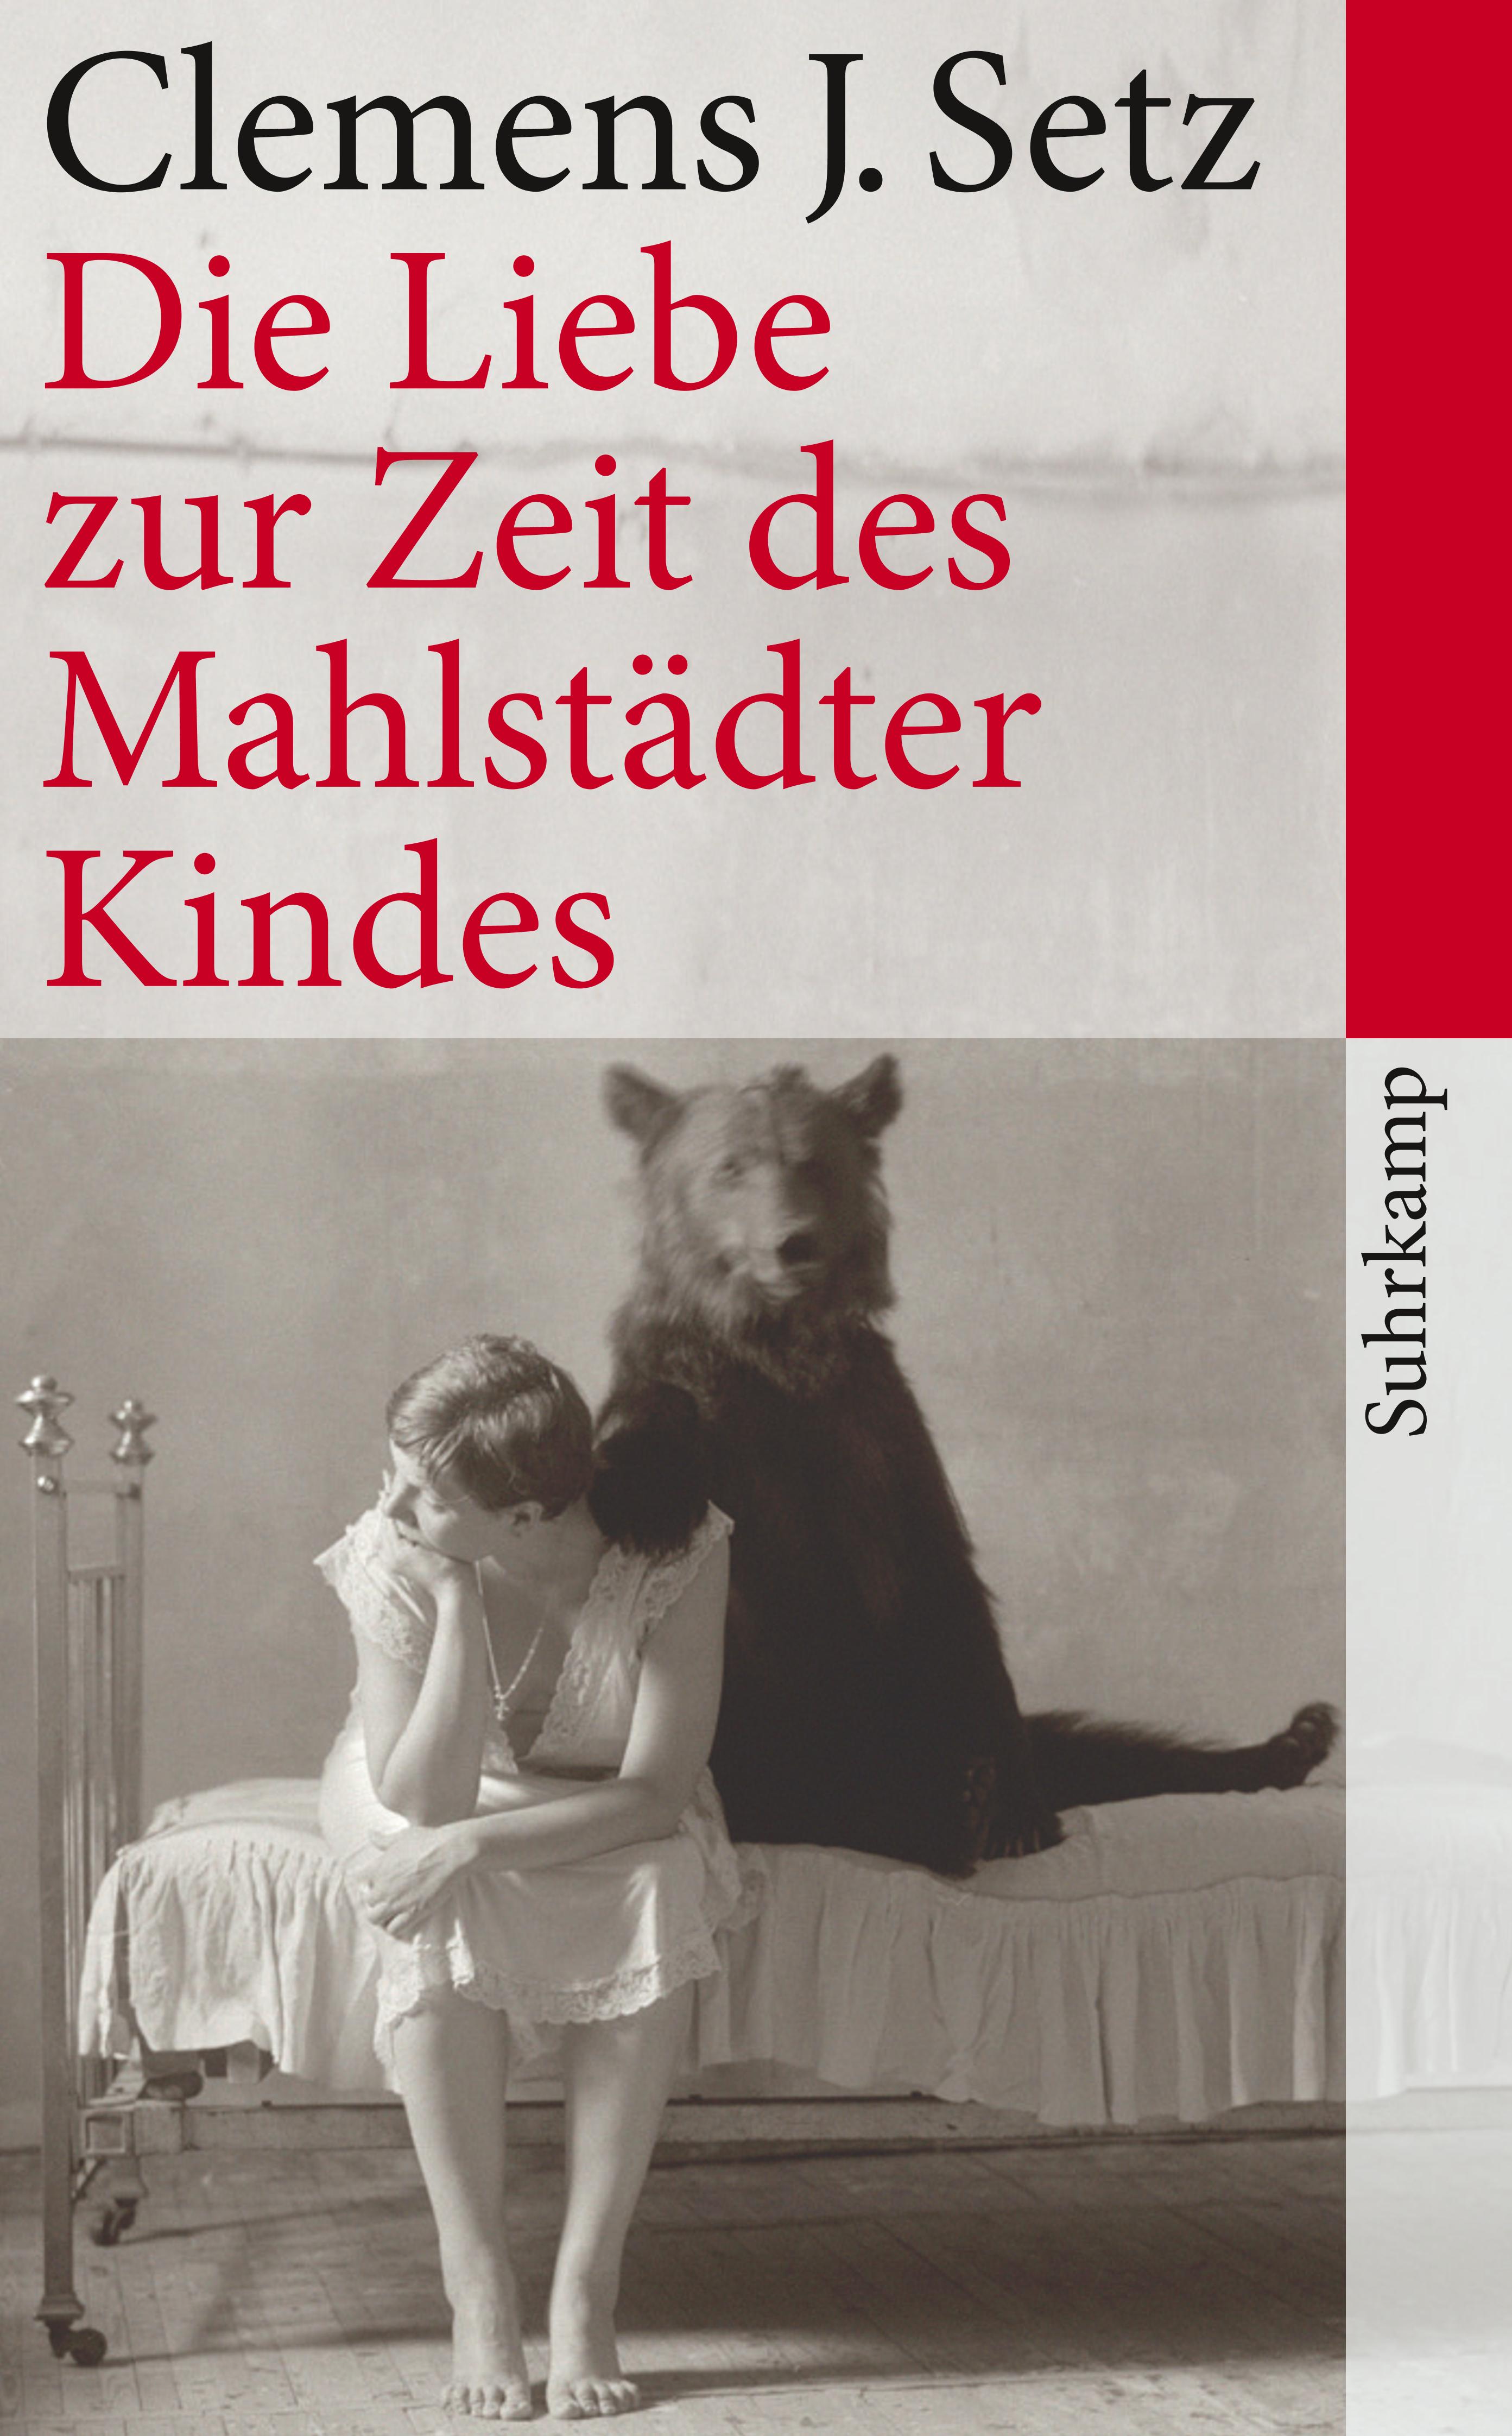 Clemens J. Setz: Die Liebe zur Zeit des Mahlstädter Kindes (German language, 2011, Suhrkamp)